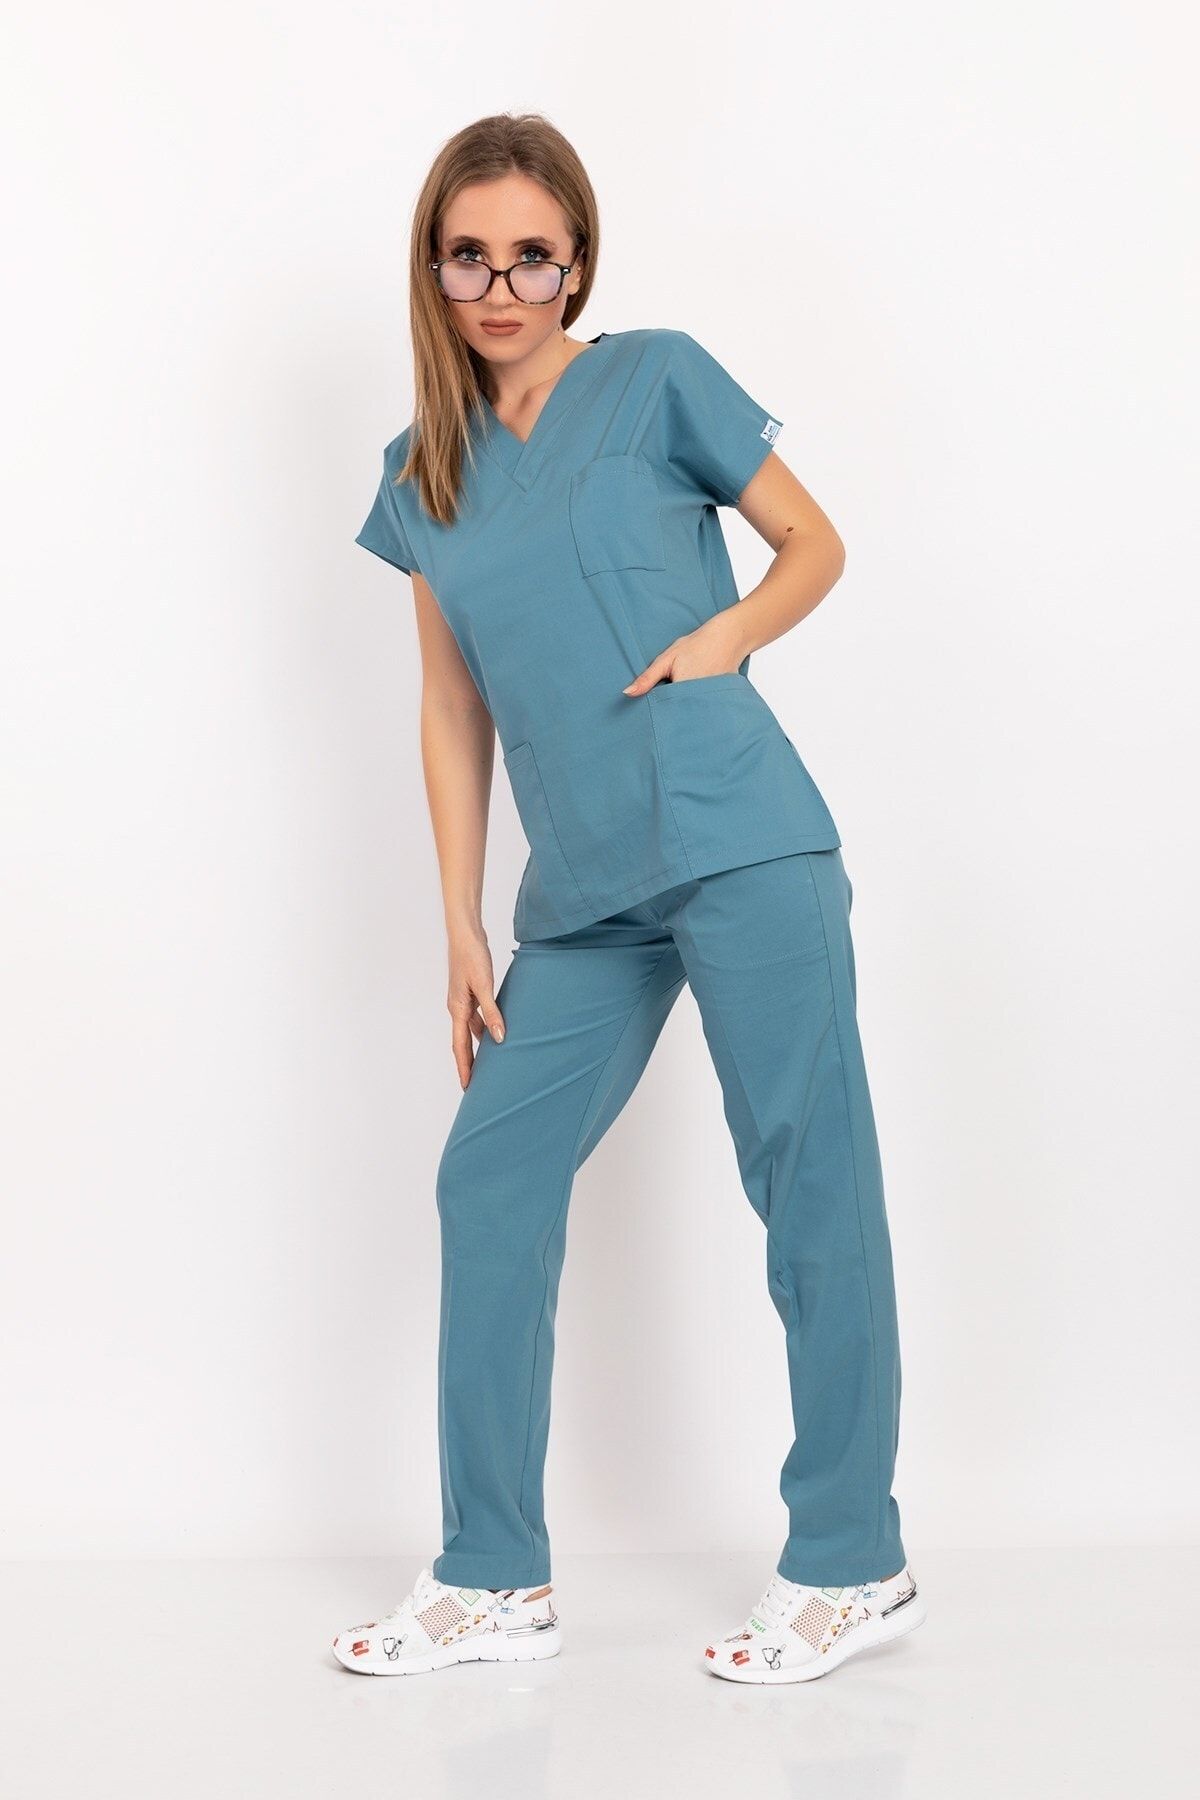 Nur Medikal Giyim Unisex Kadın Erkek Cool Petrol Mavi Likralı Doktor Hemşire Hastane Scrubs Üniforma Takımı